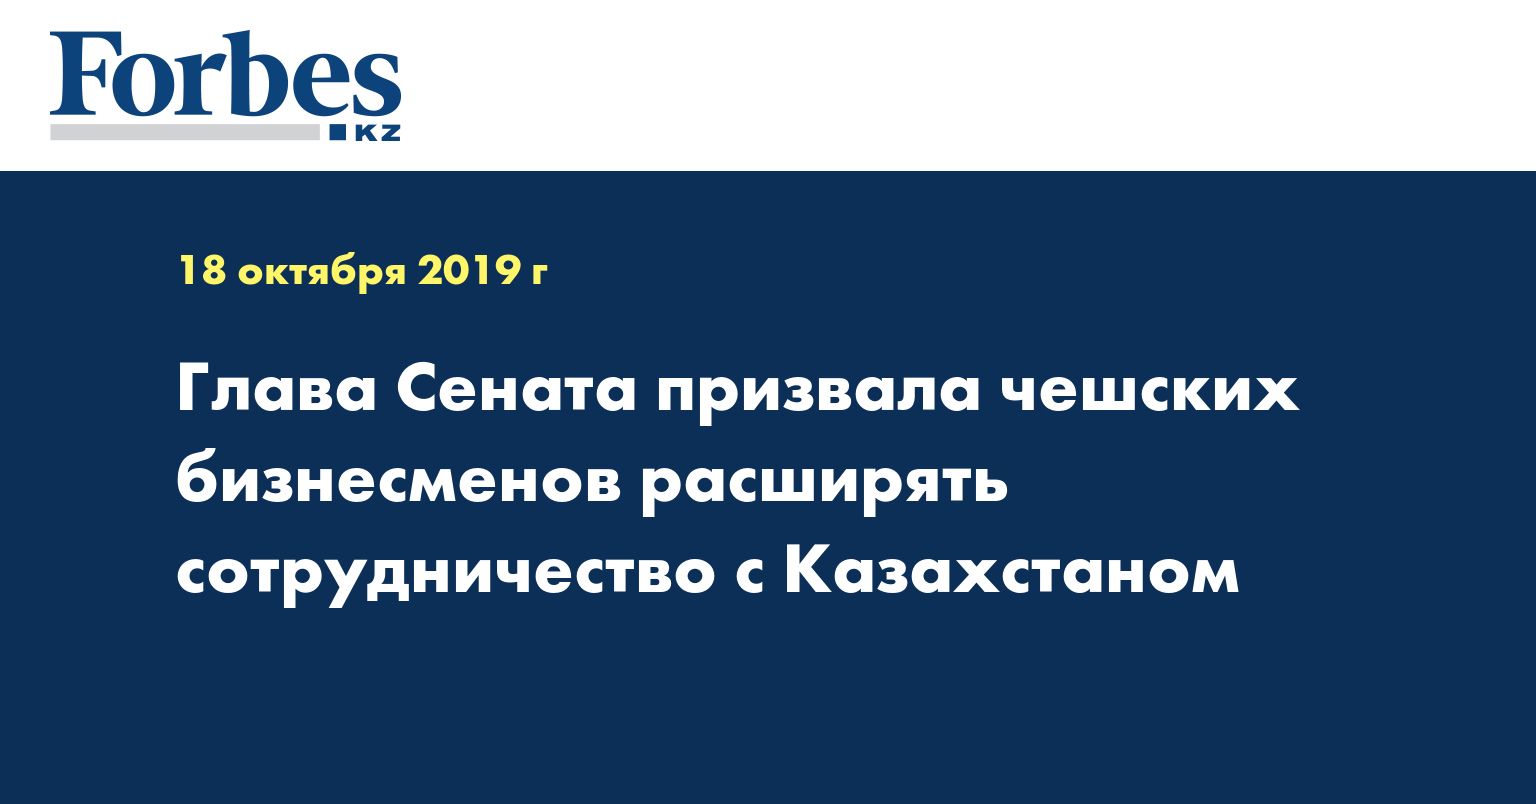 Глава Сената призвала чешских бизнесменов расширять сотрудничество с Казахстаном